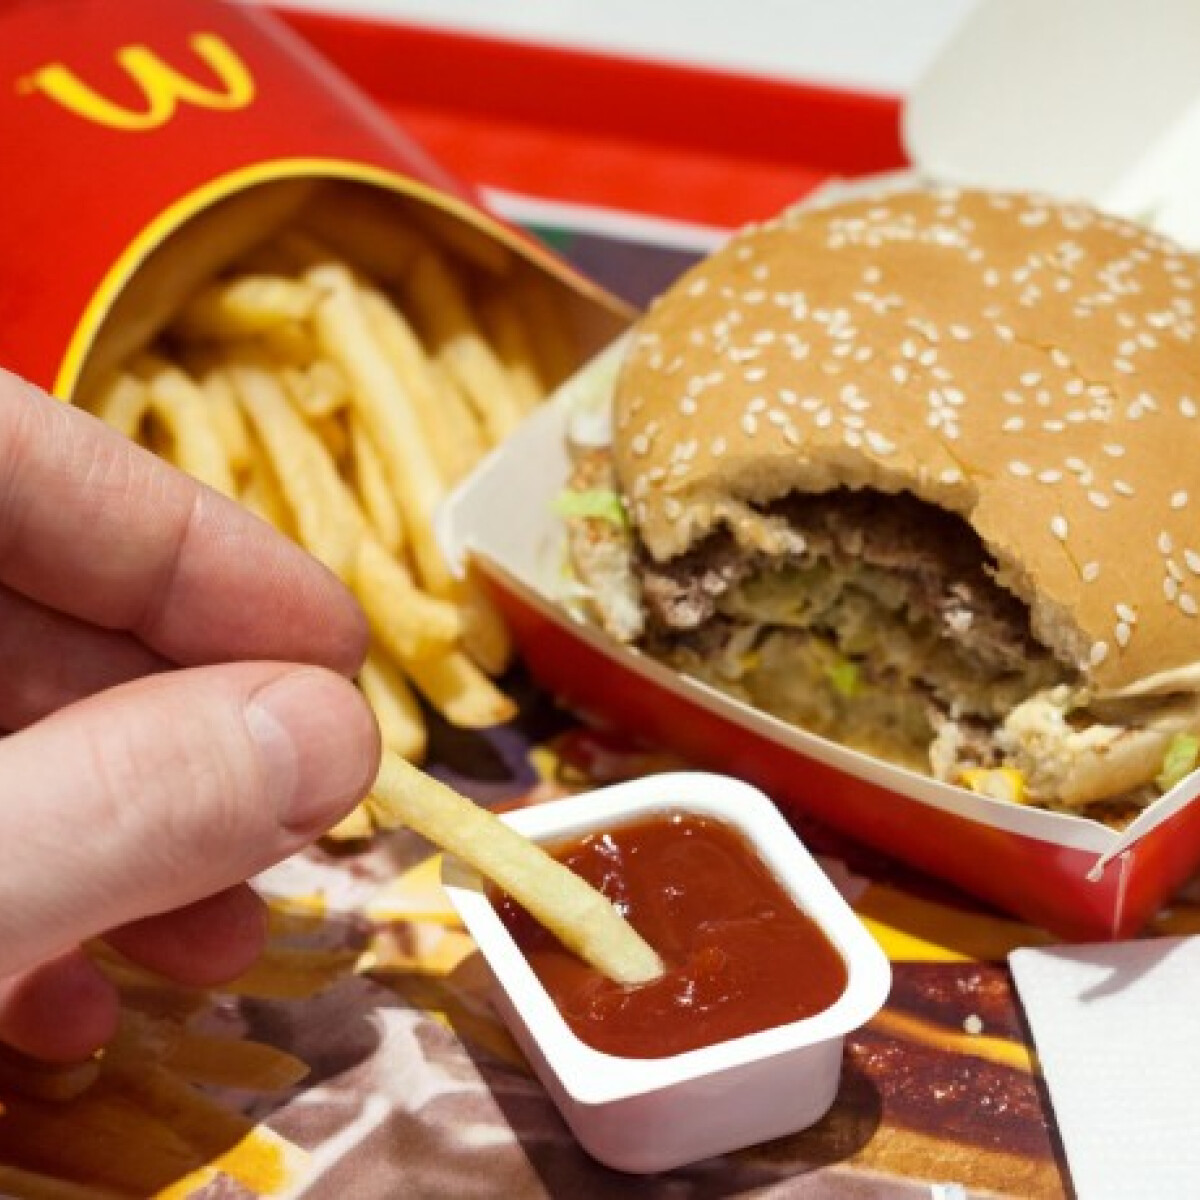 Neked mennyit kell dolgoznod egy Big Mac-ért?